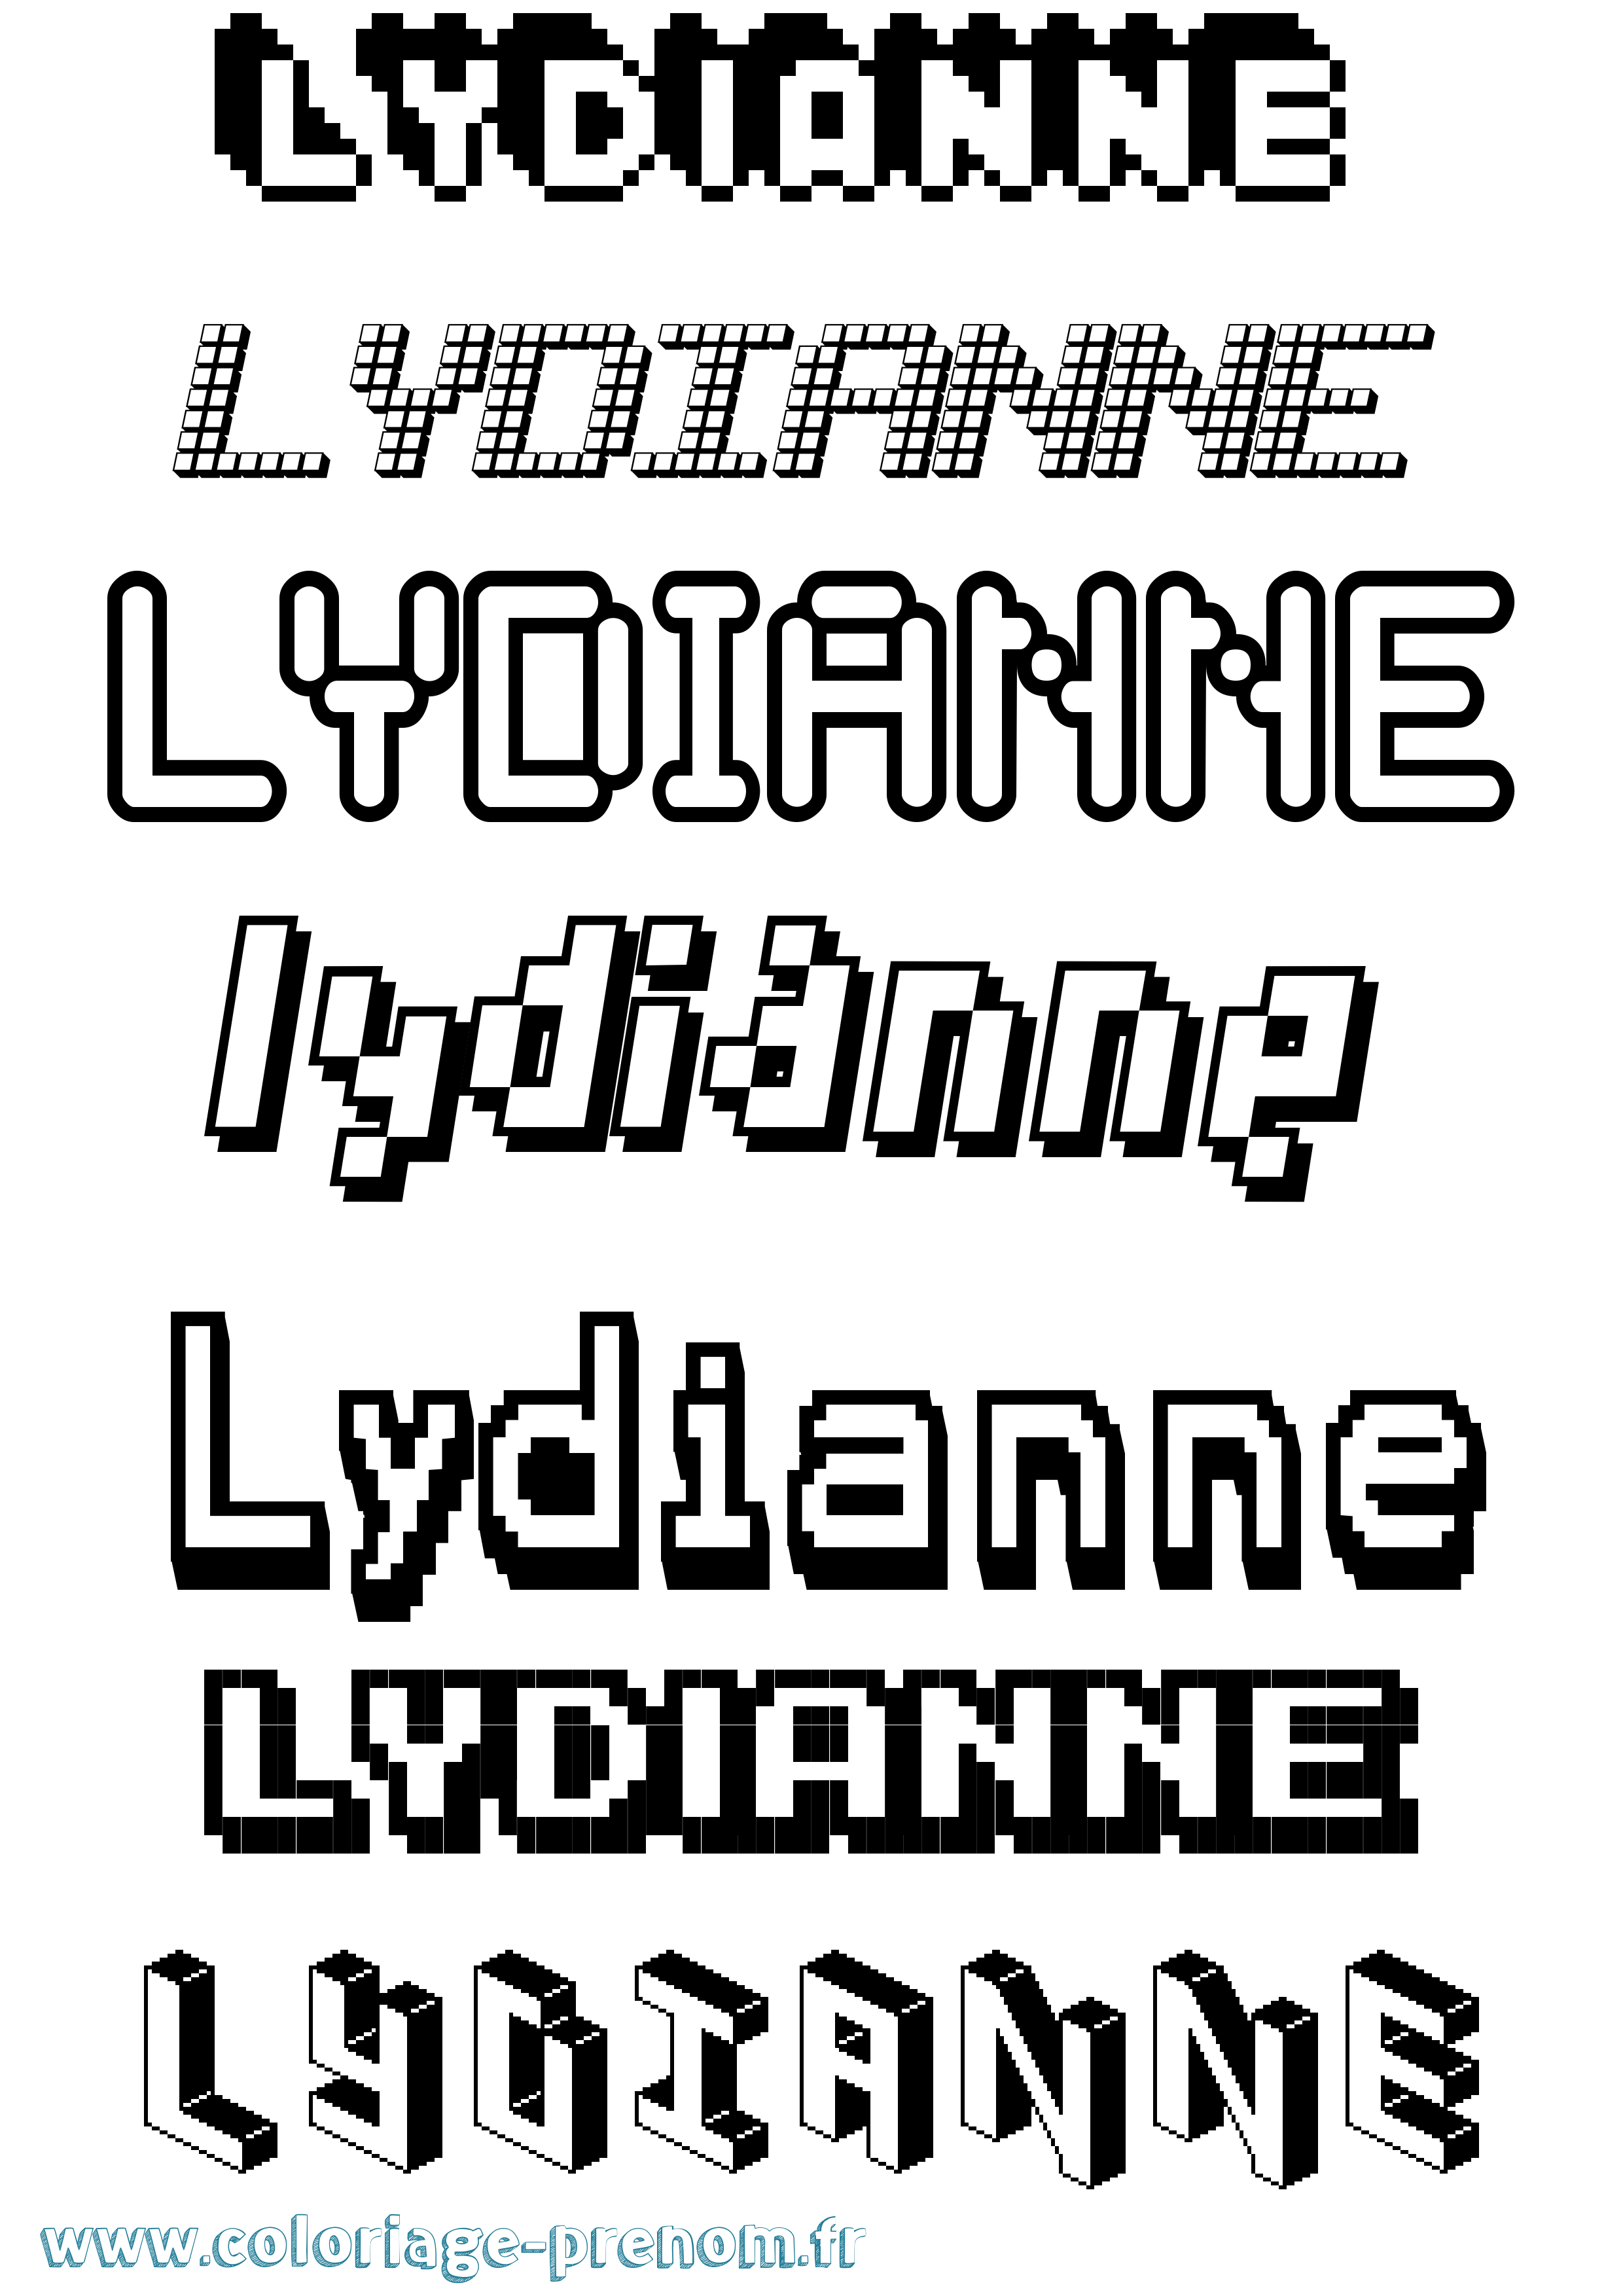 Coloriage prénom Lydianne Pixel